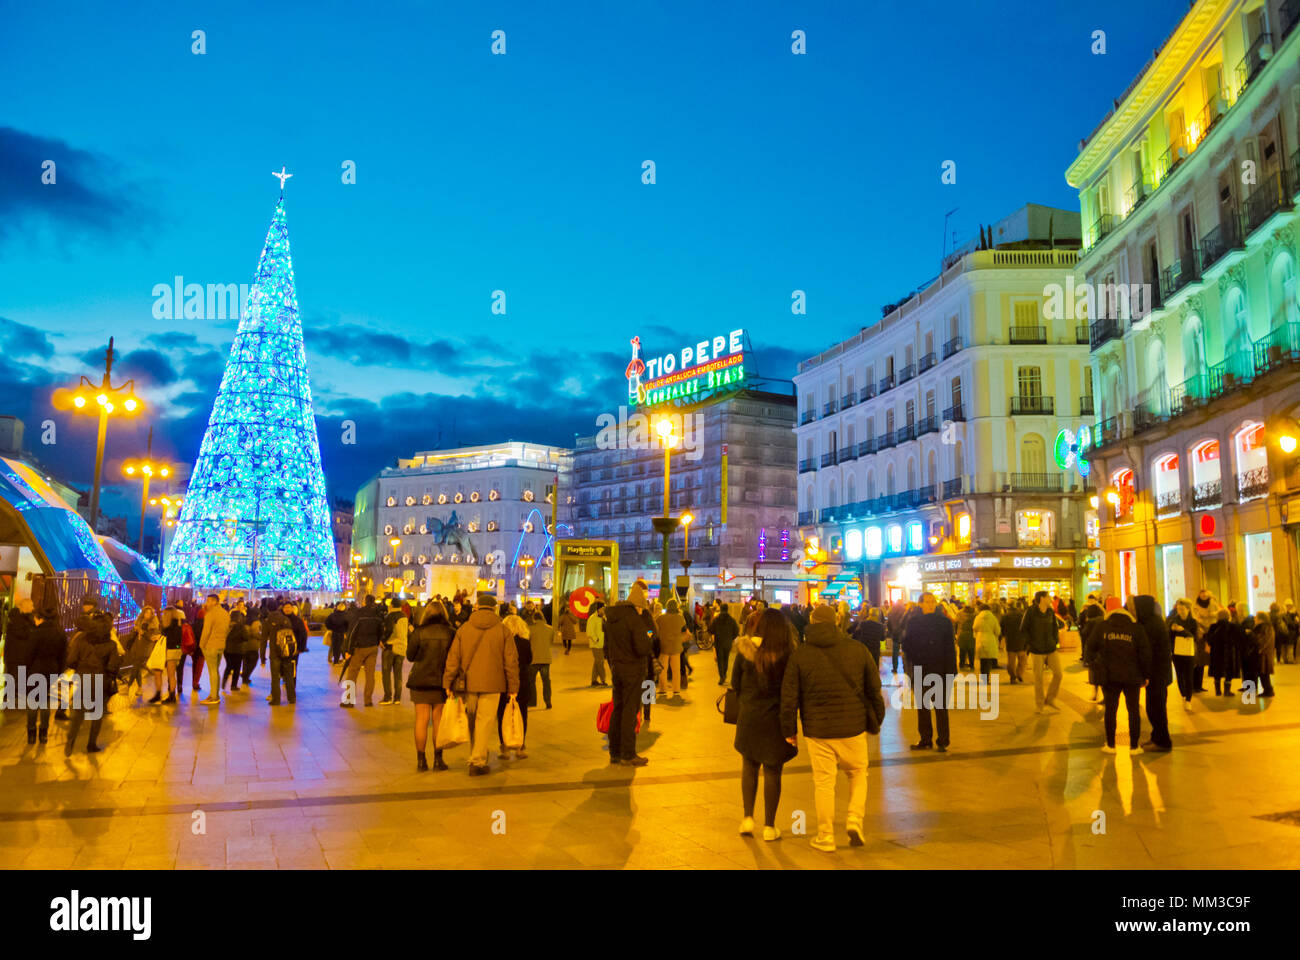 Puerta del Sol, Madrid, Spain Stock Photo